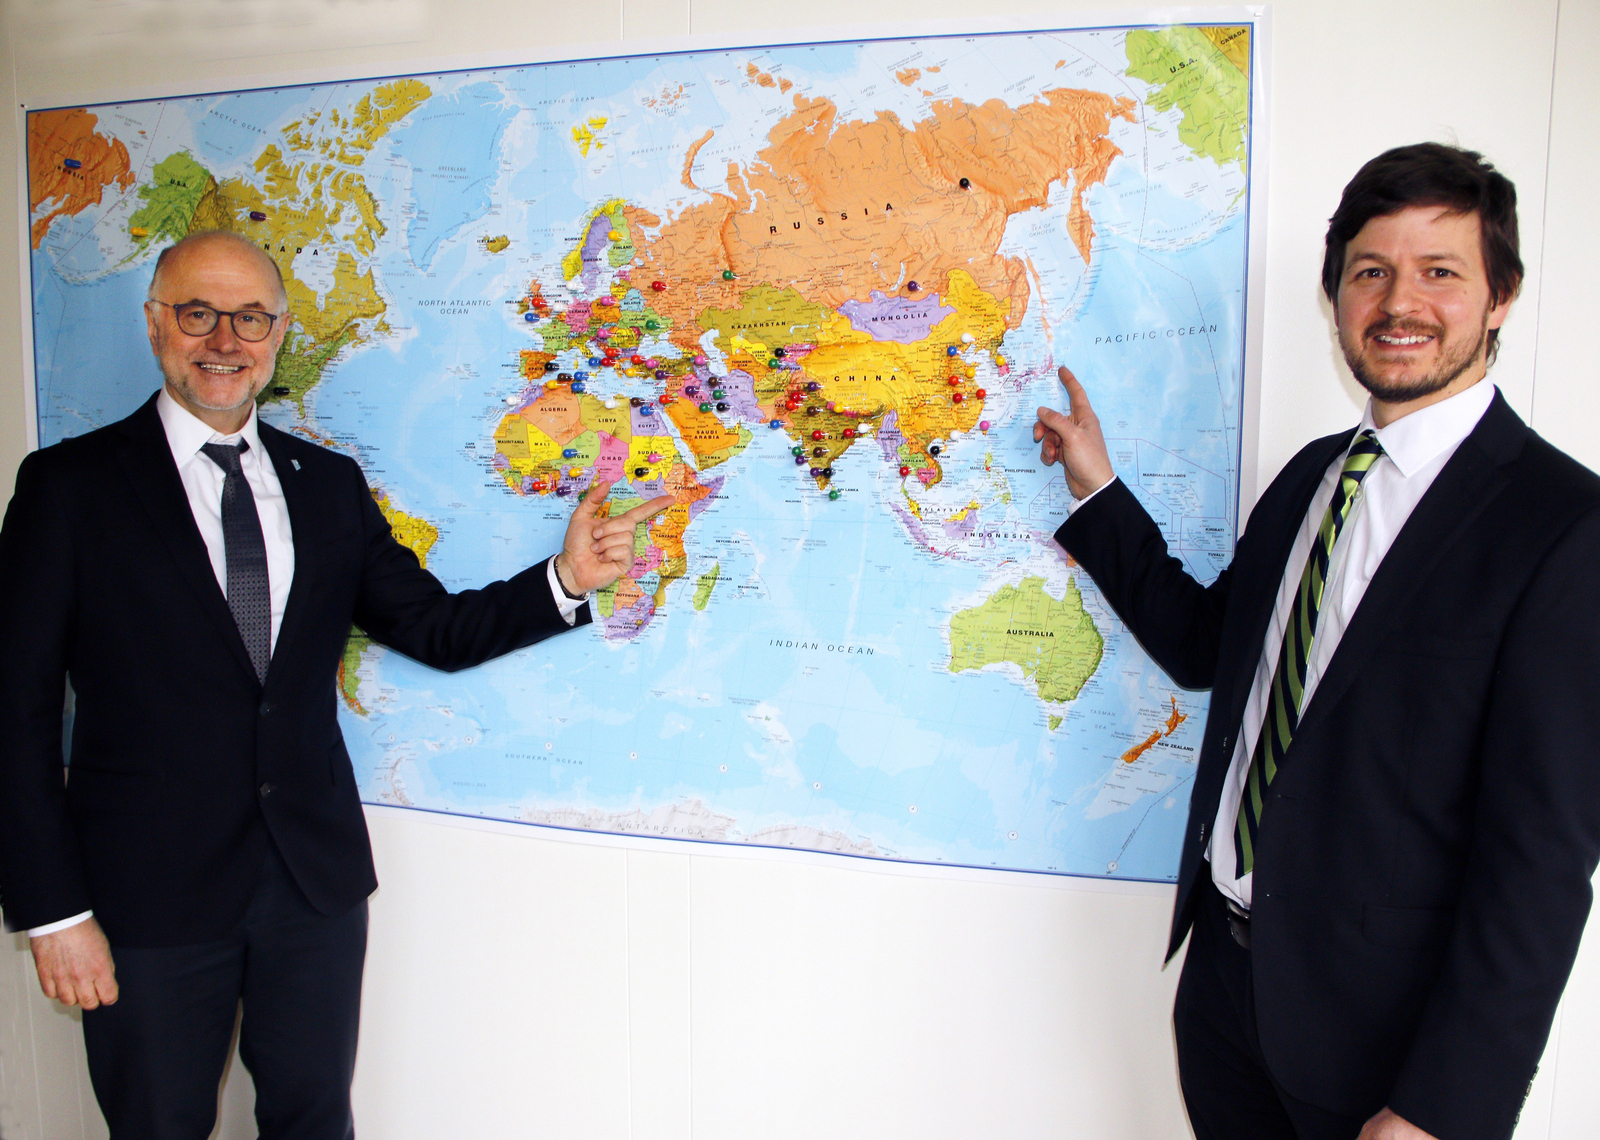 Rektor Lieber und der neue Leiter des International Centers Alexander Burdumy vor einer Weltkarte